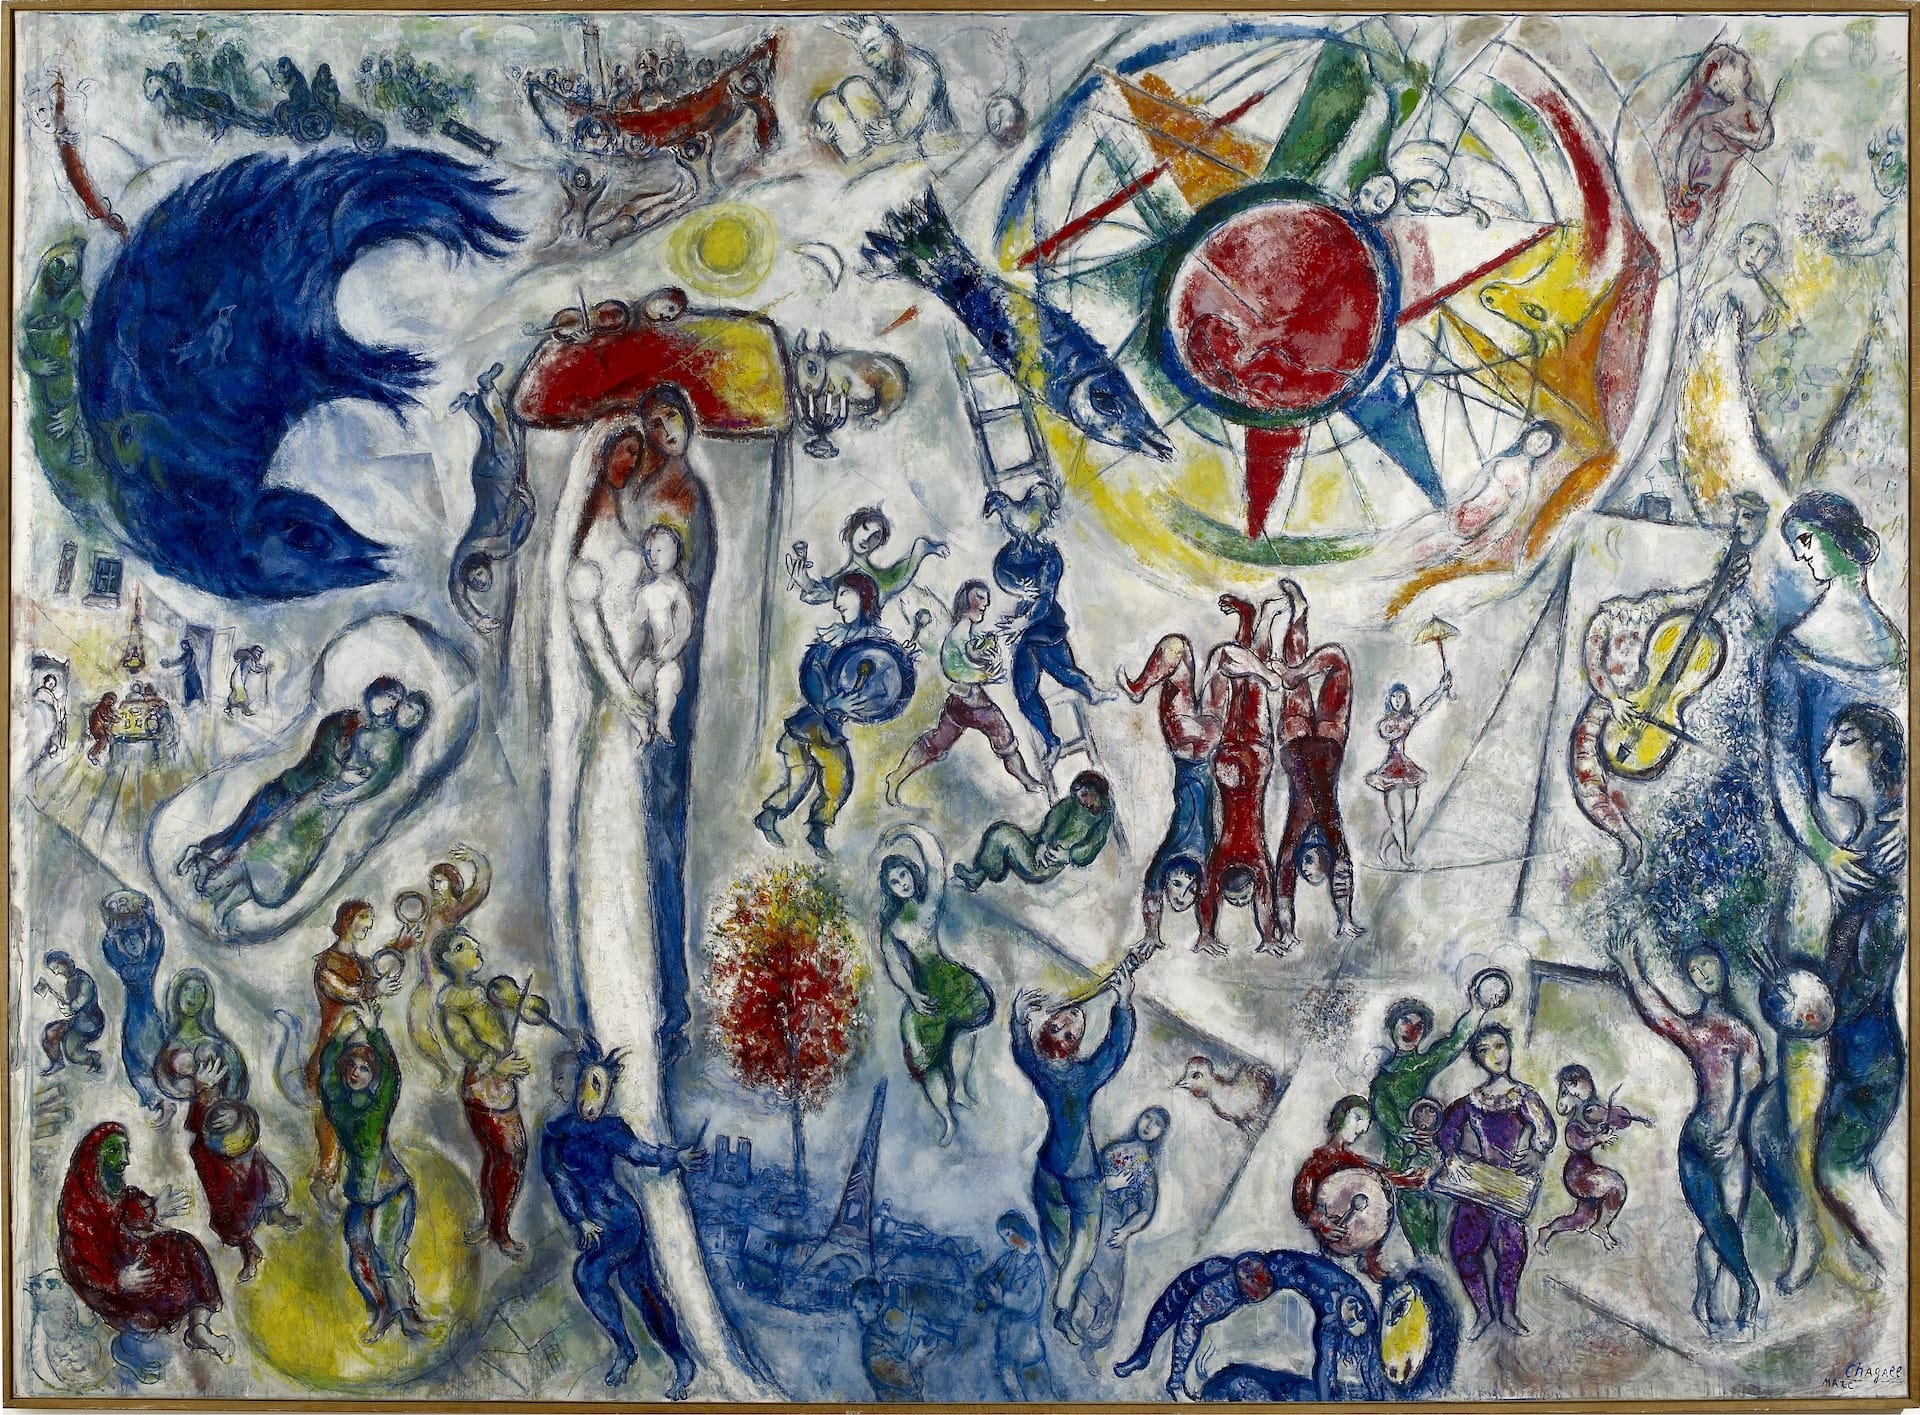 Marc Chagall, La vie, 1964 Huile sur toile, 296 x 406 cm.